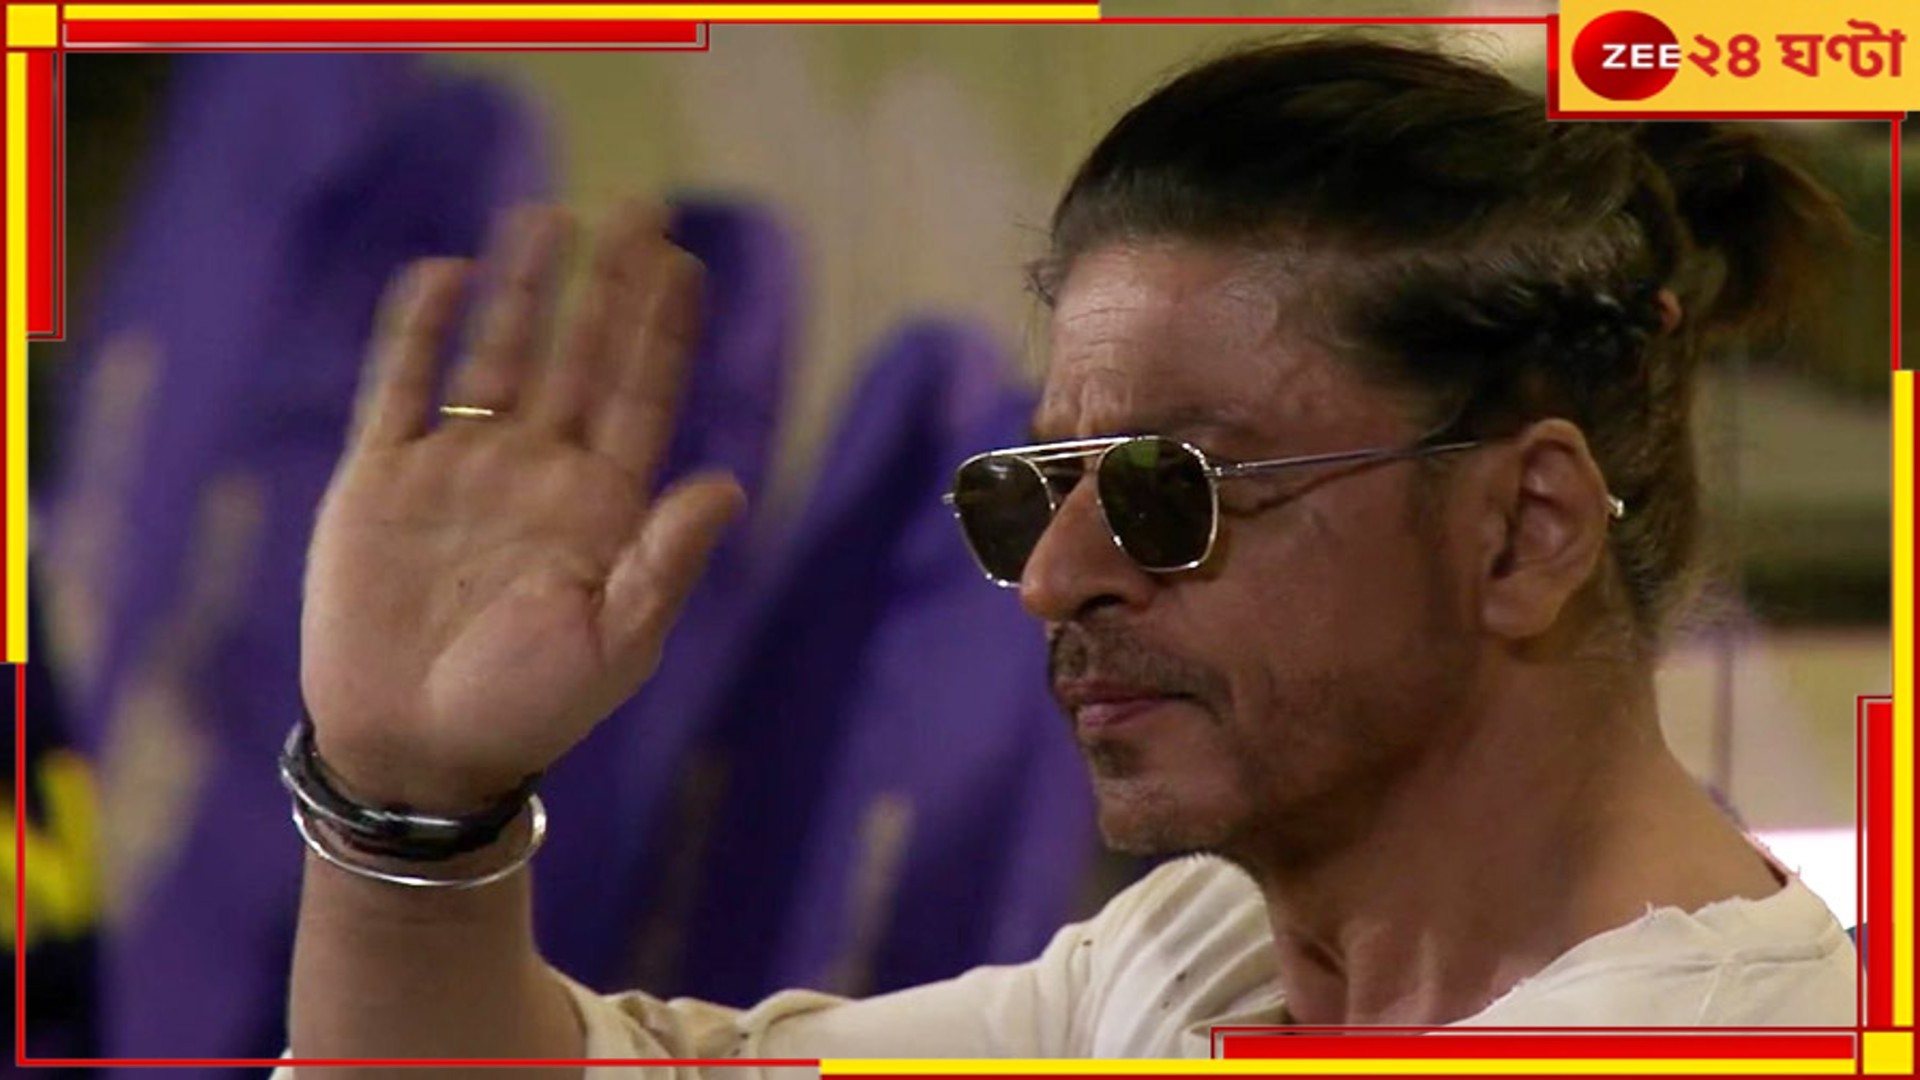 Shah Rukh Khan: সুস্থ রয়েছেন শাহরুখ, হাসপাতাল থেকে ছাড়া পেয়ে বৃহস্পতিবারই ফিরতে পারেন মুম্বই! 